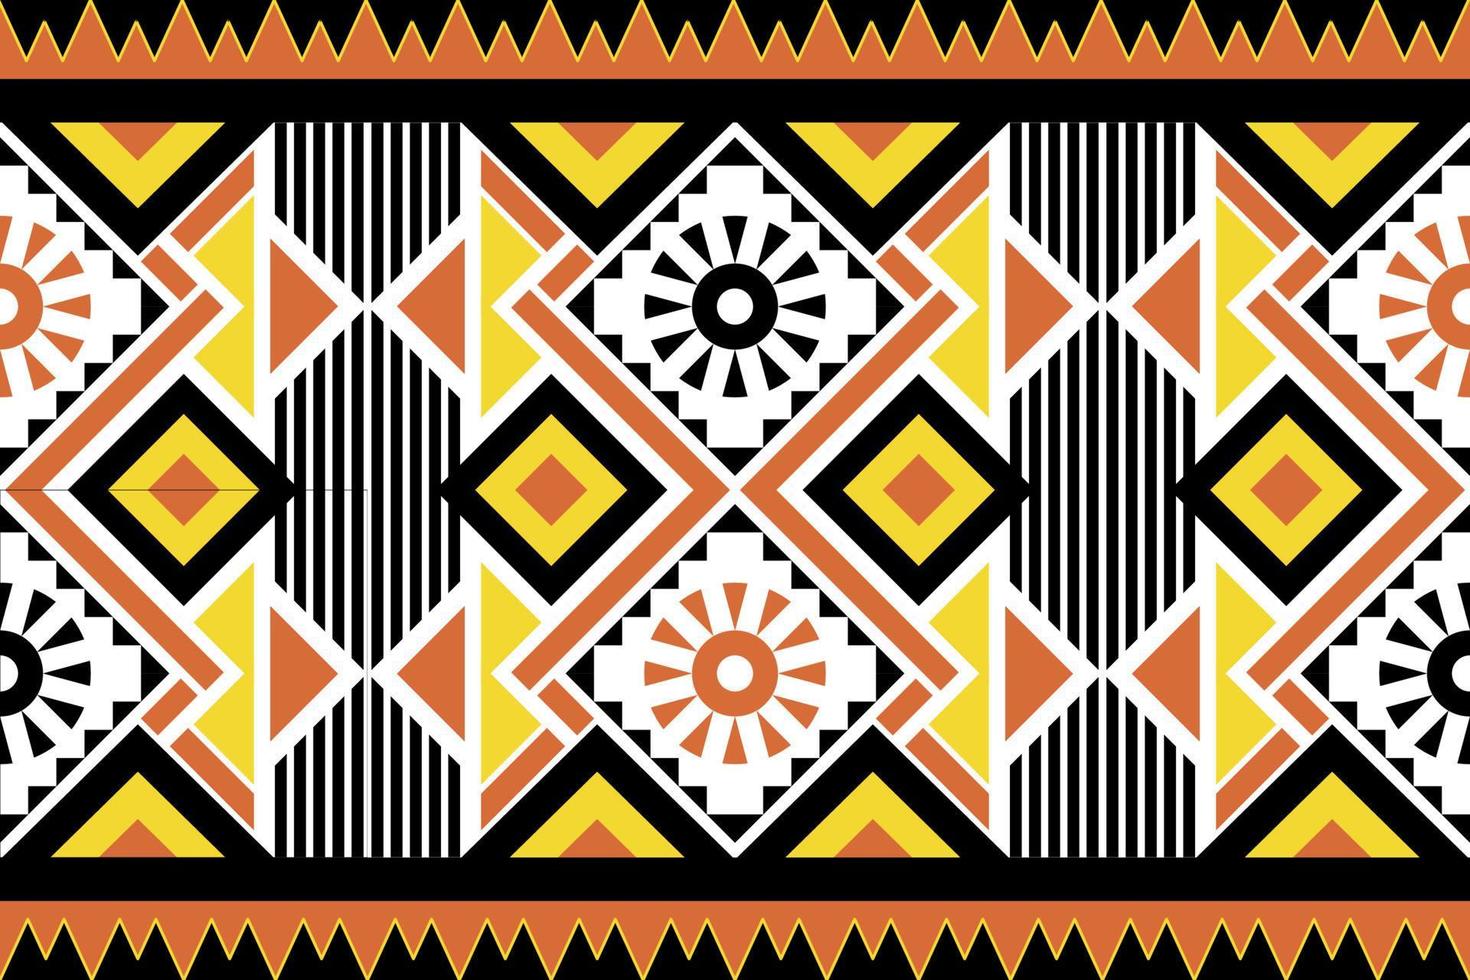 motif harmonieux ethnique géométrique coloré pour le papier peint, l'arrière-plan, le tissu, le rideau, le tapis, les vêtements et l'emballage. vecteur